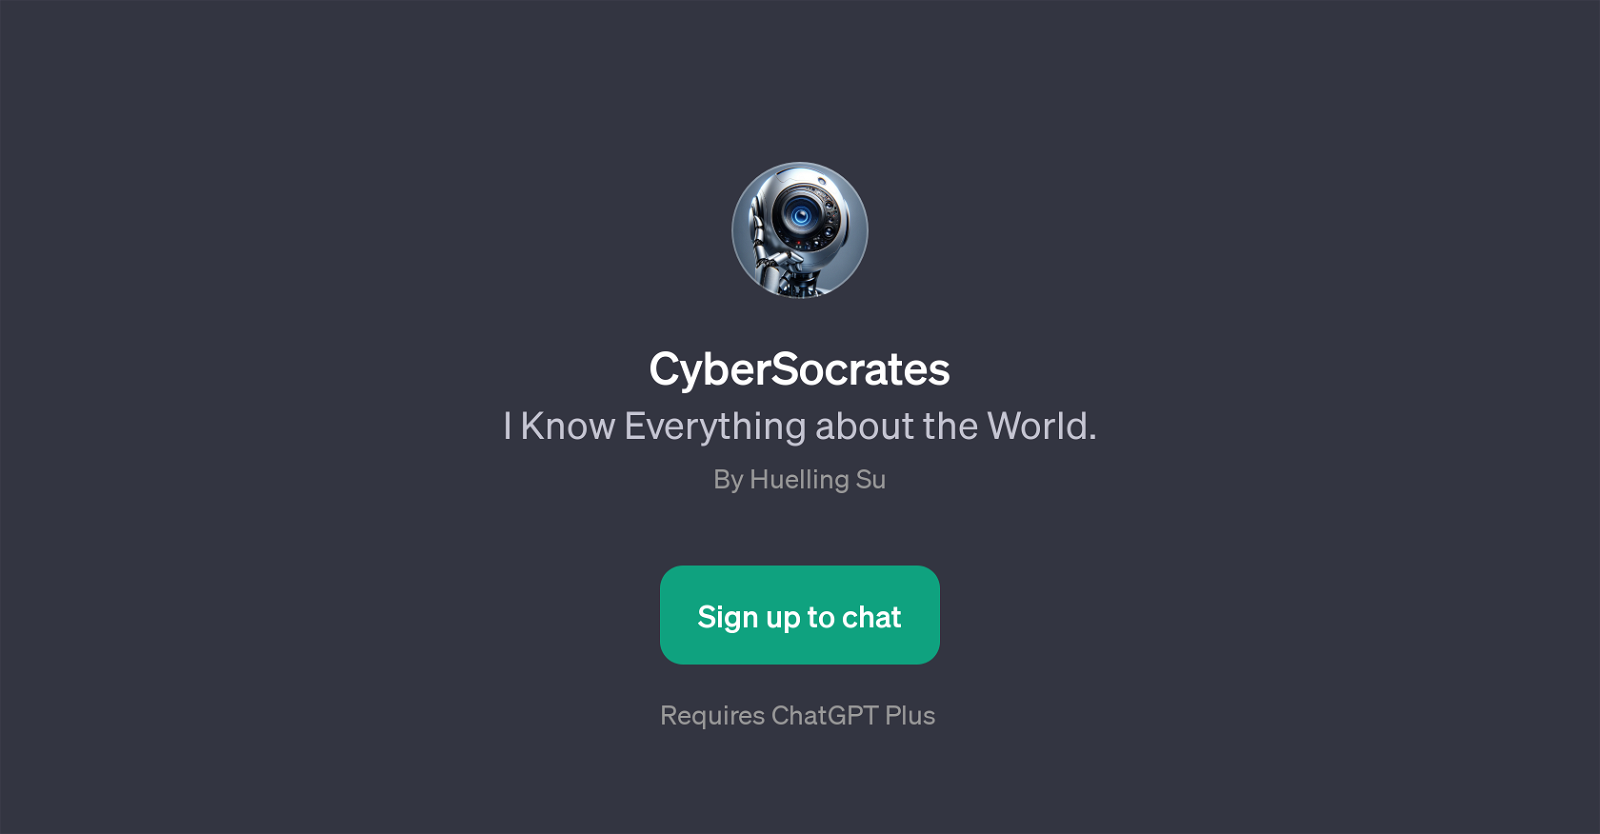 CyberSocrates website